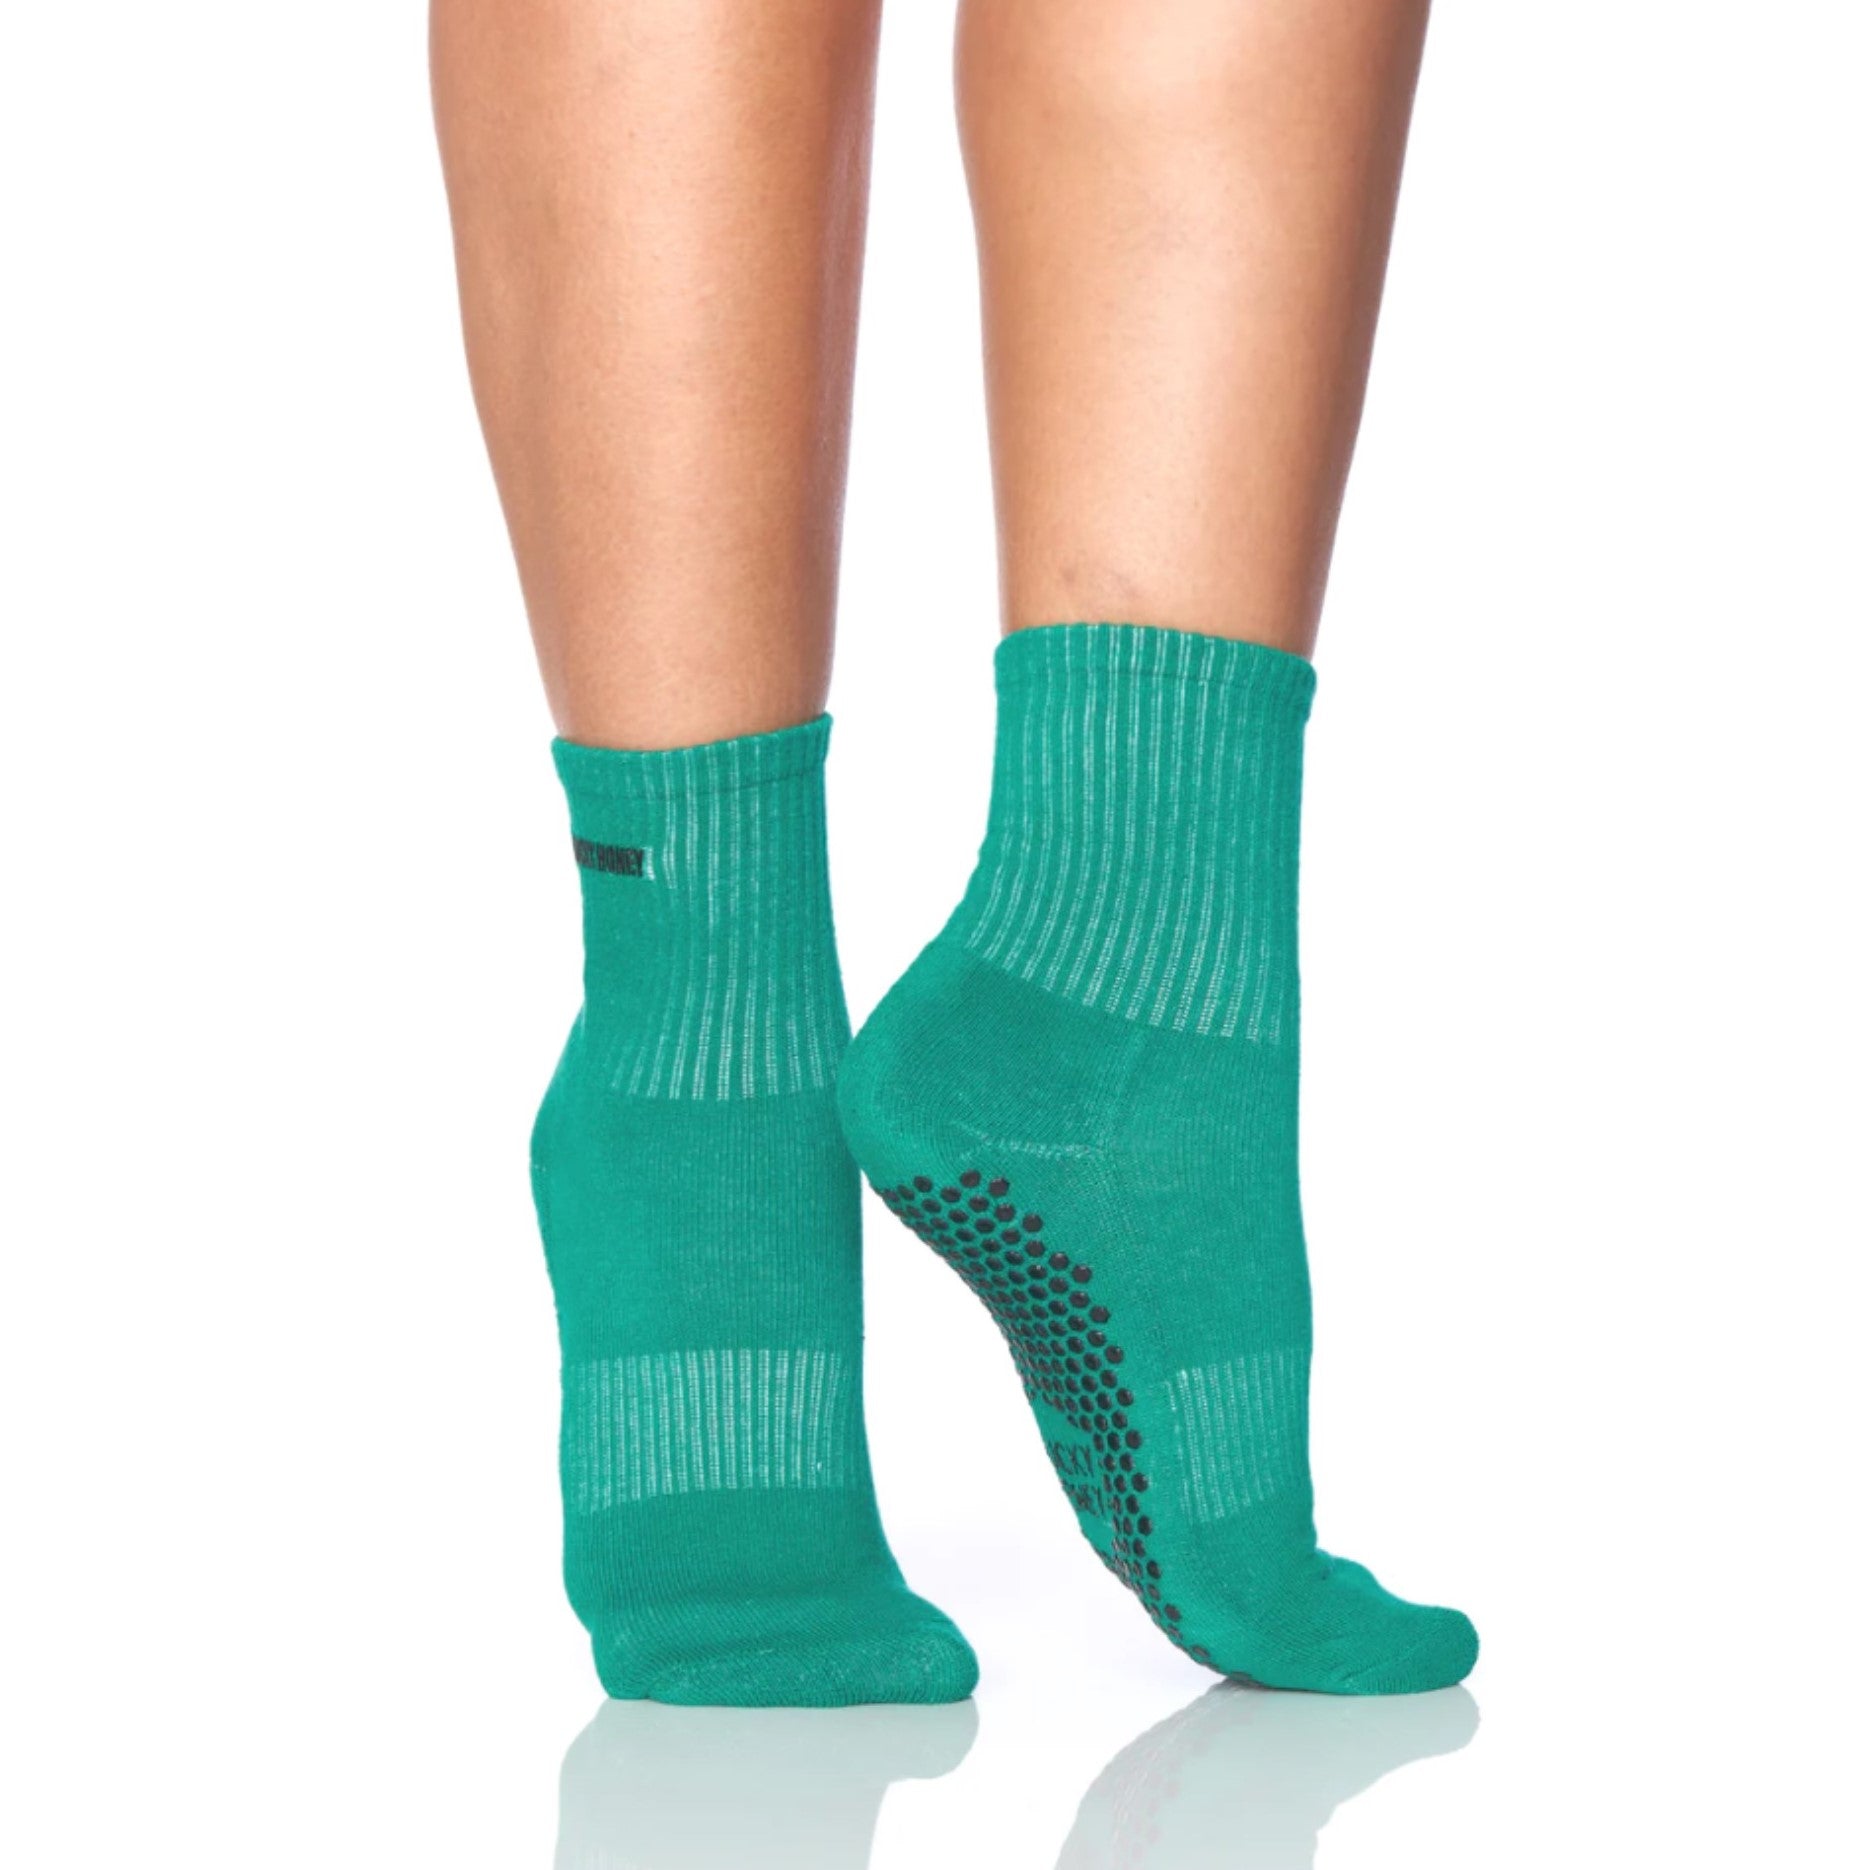 Eurow Non-Slip Grip Socks, Black, Unisex, 1 Pair